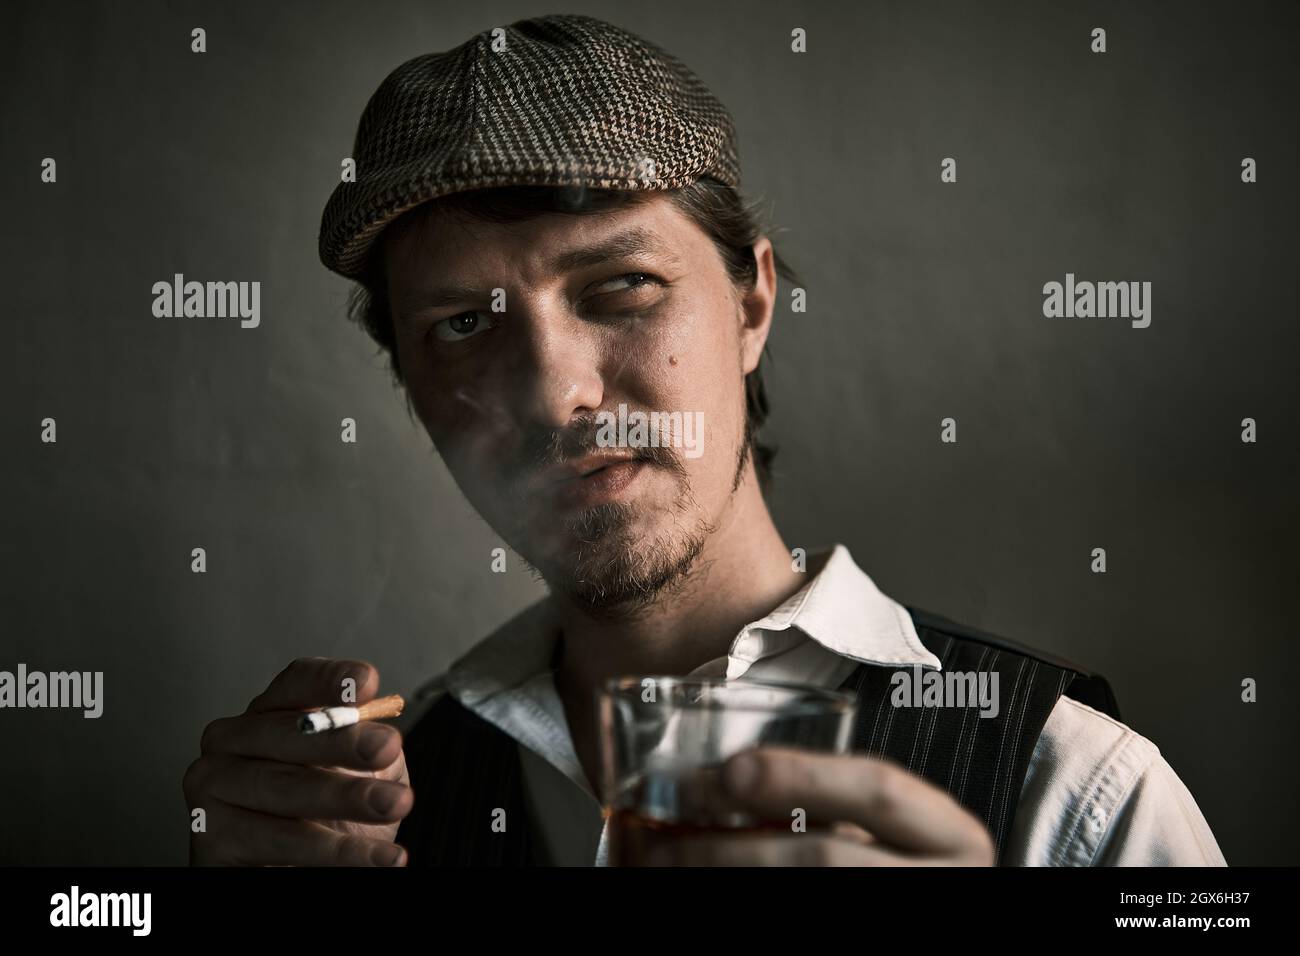 Un jeune homme fume une cigarette et boit du whisky, souffle de la fumée, vêtu d'un style rétro, dans un béret, une prise de vue cinématographique, un gros plan Banque D'Images